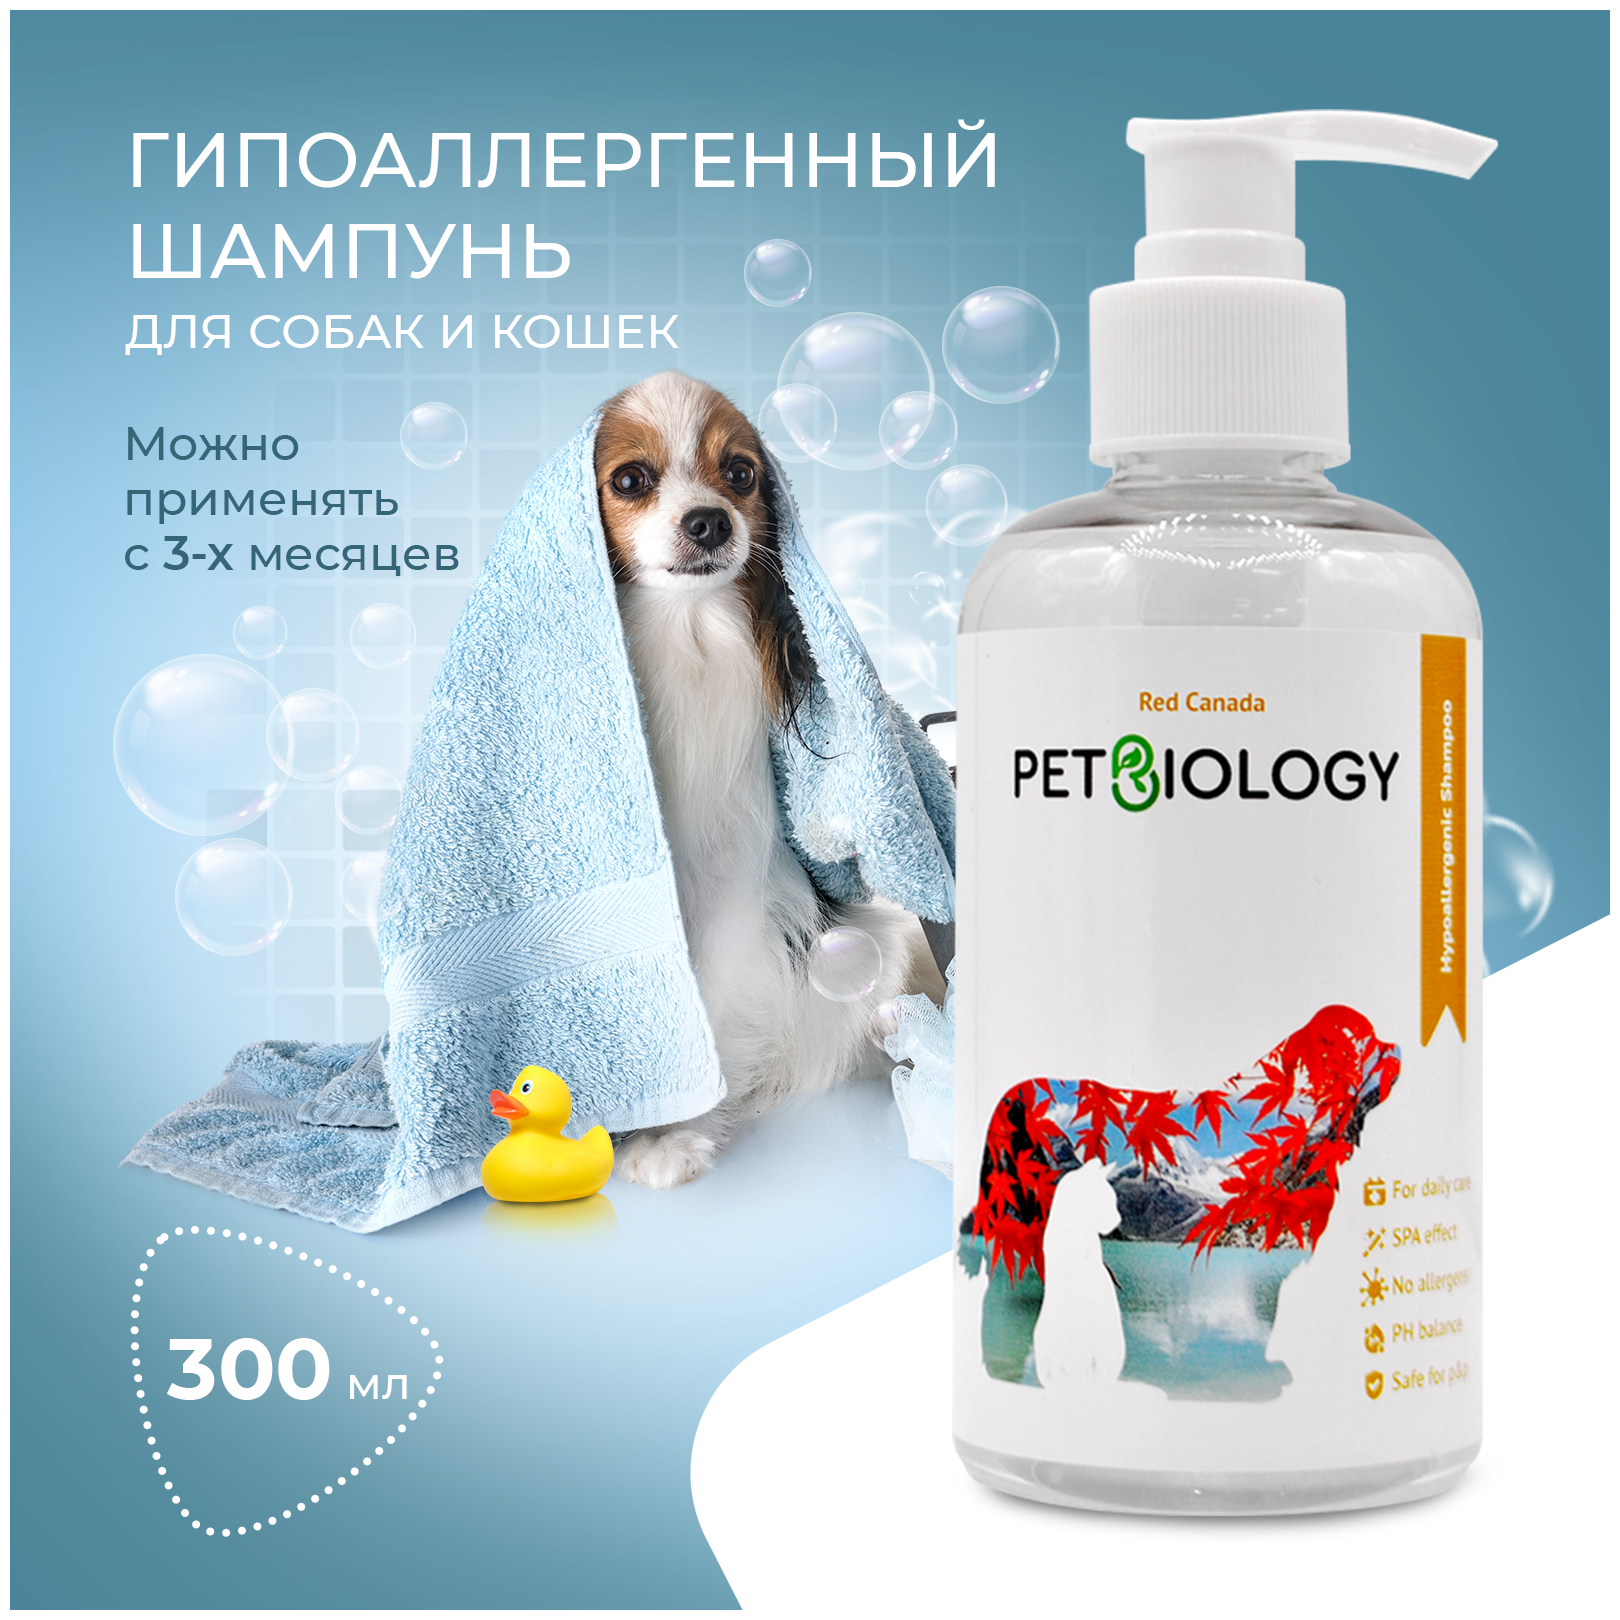 Шампунь для собак и кошек с 3-х месяцев PETBIOLOGY, 300 мл.